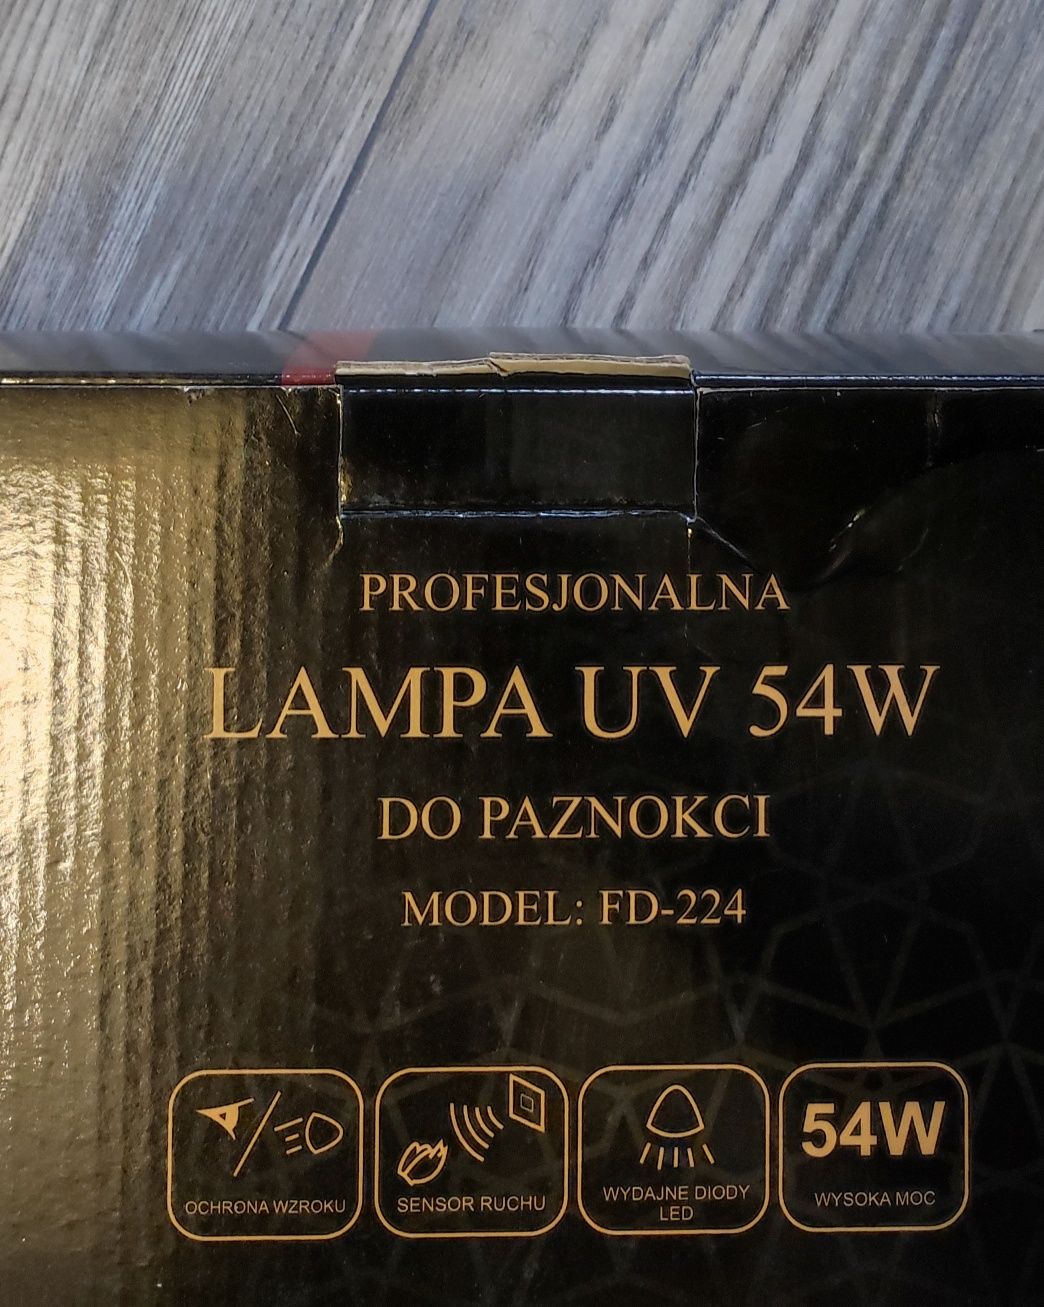 Profesjonalna lampa UV do paznokci 54W